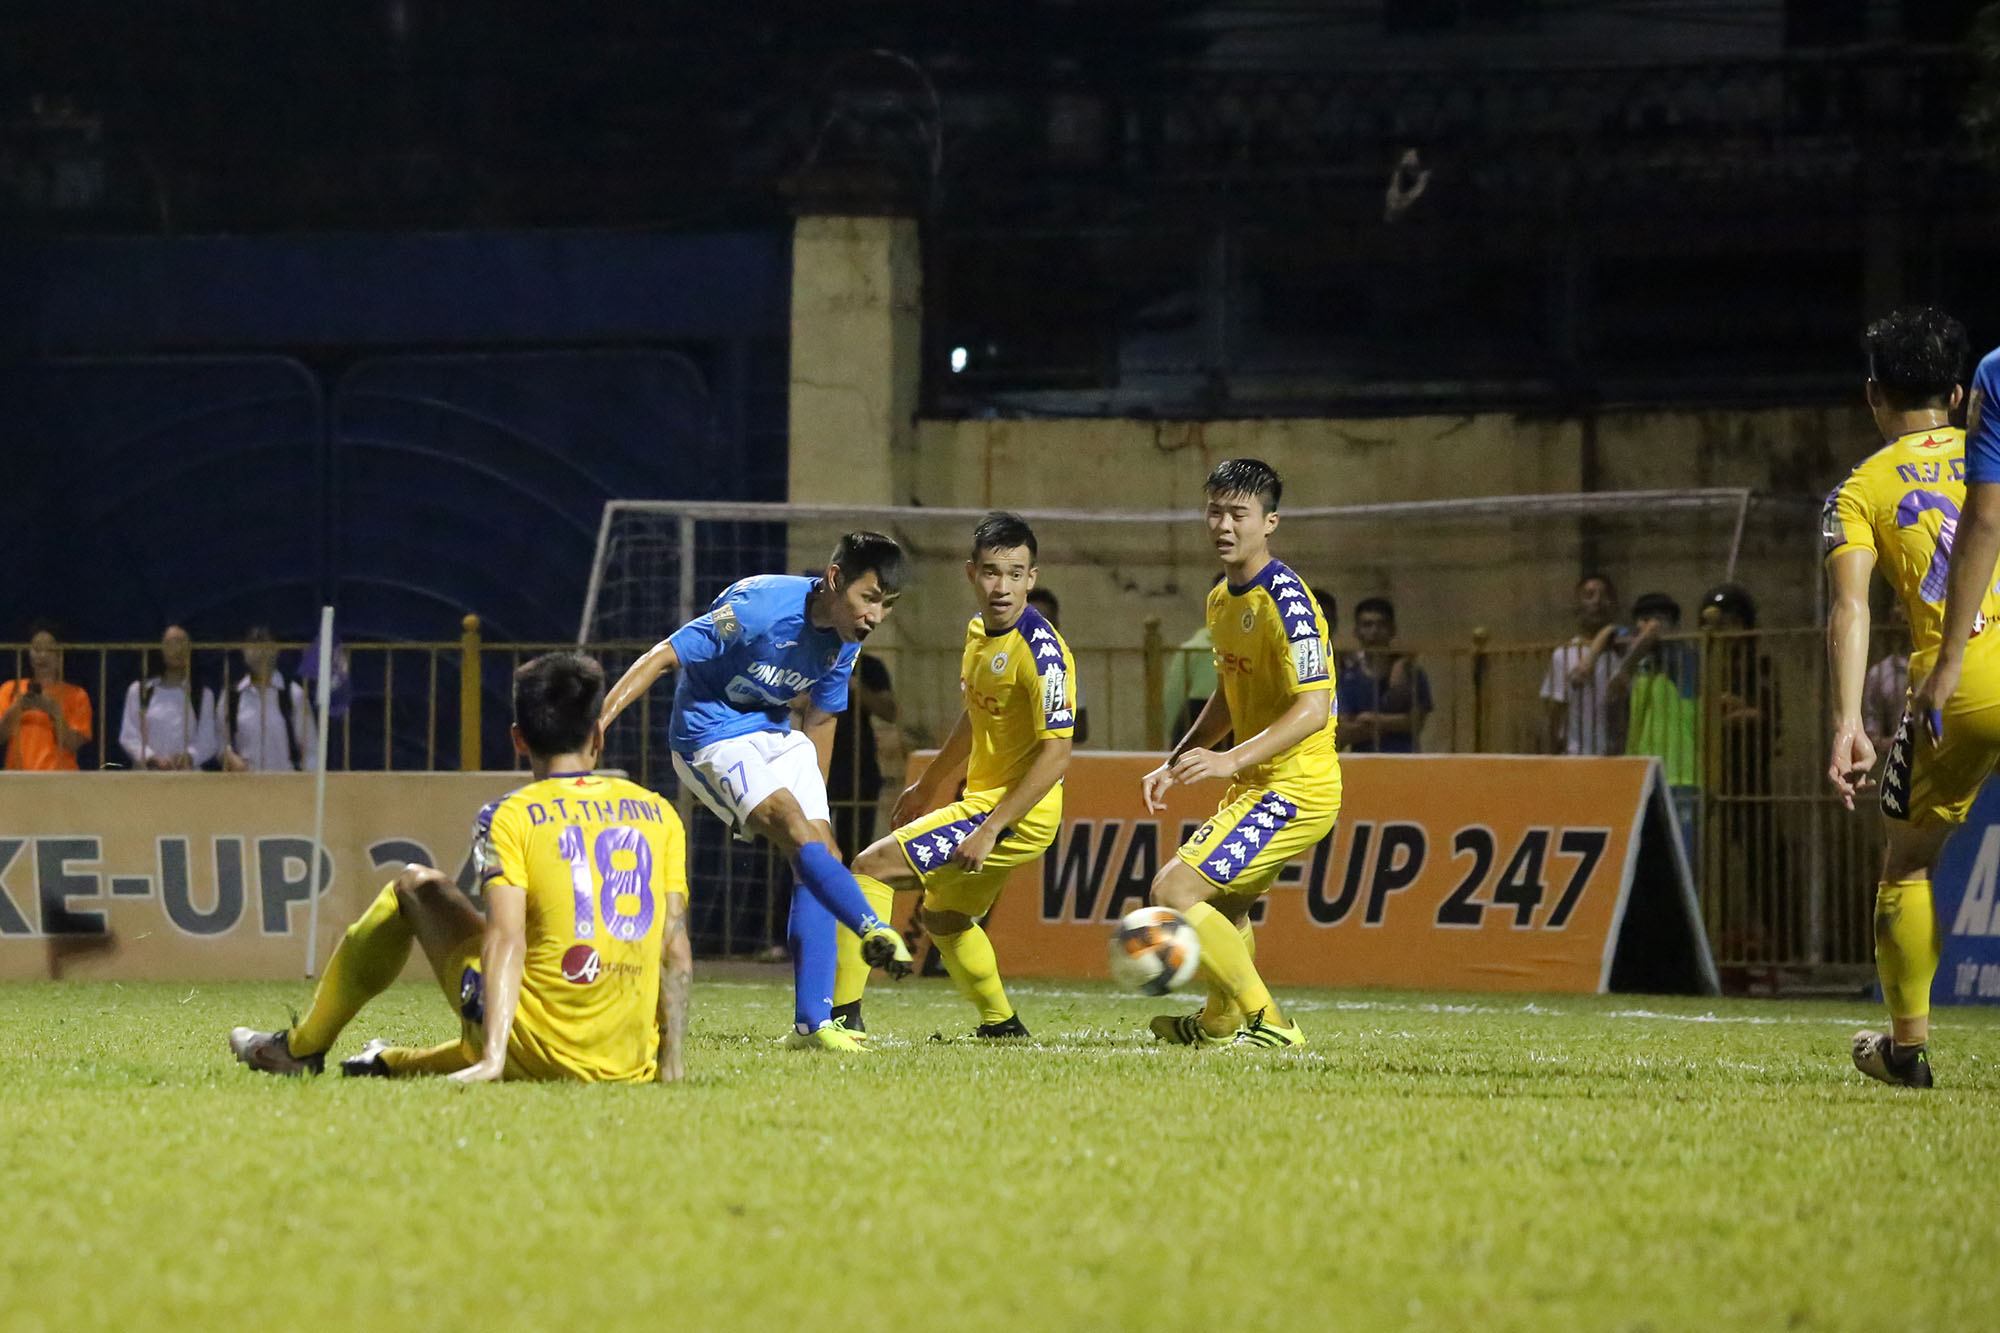 Tuy nhiên anh đã không ngăn được các cầu thủ Than Quảng Ninh ghi thêm bàn thắng, bàn thứ 2 cho chủ nhà do Quách Tân thực hiện.